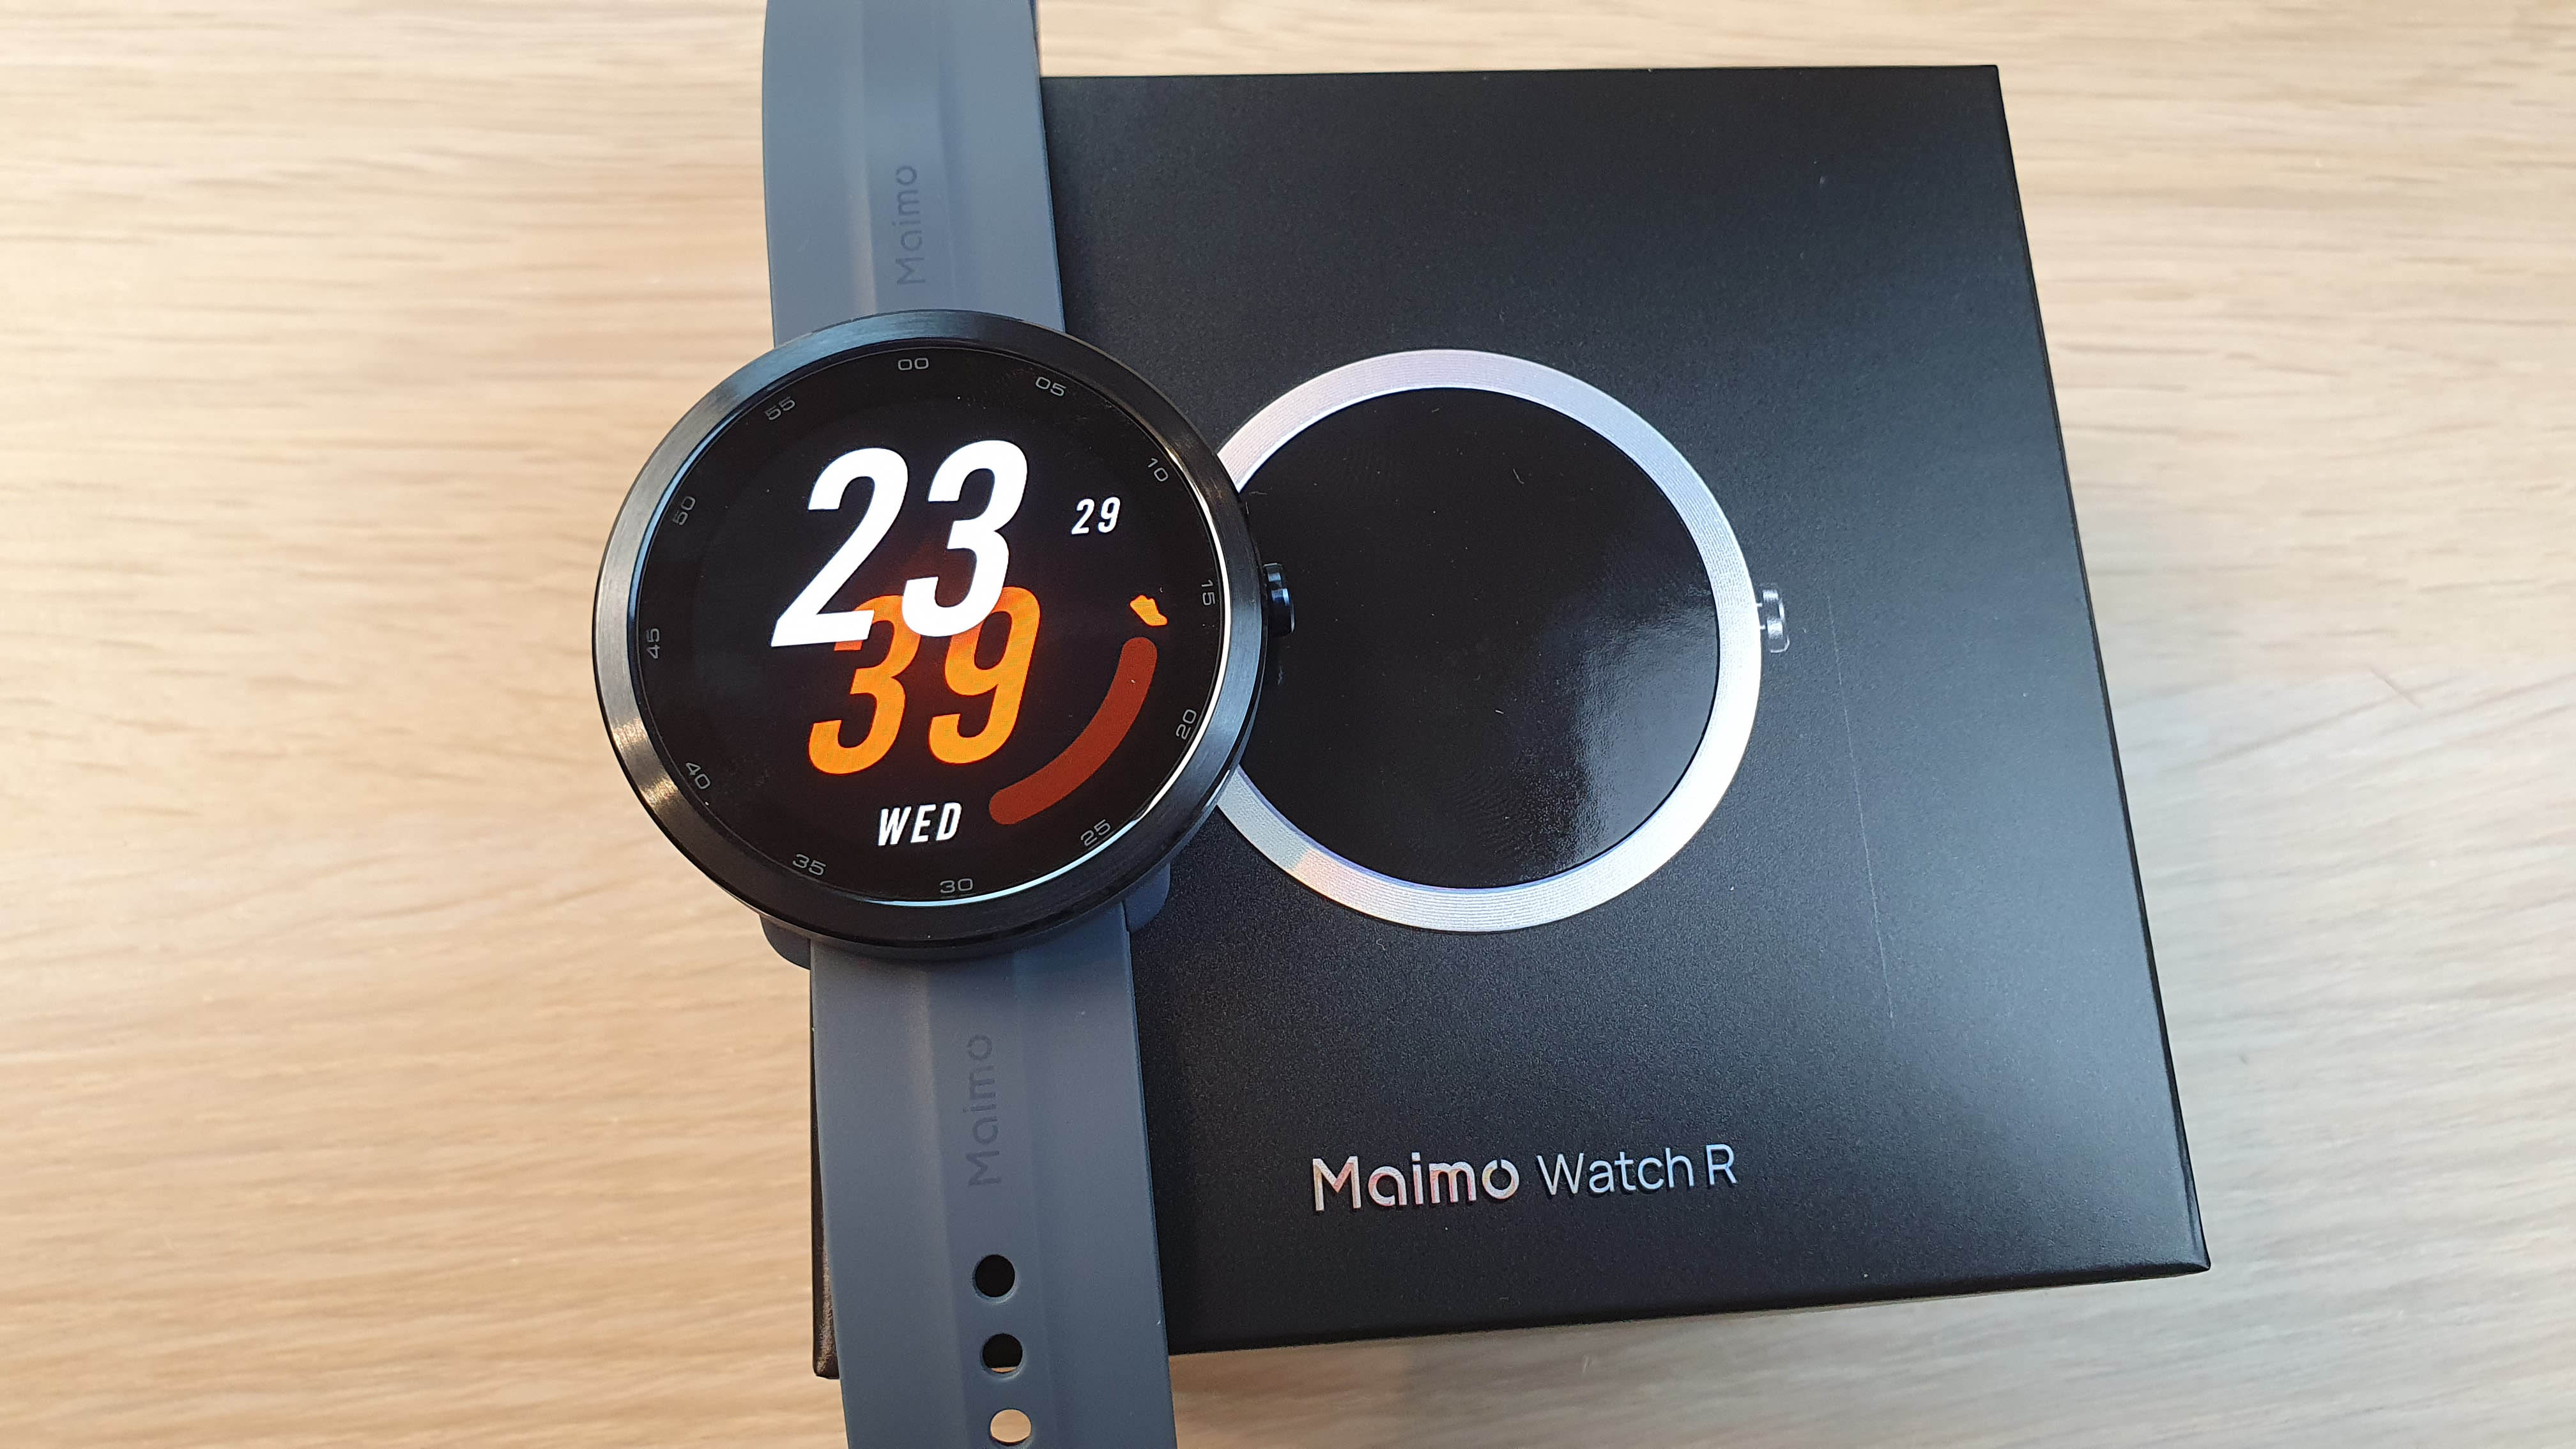 Maimo watch r. Часы Xiaomi Maimo watch r. Умные часы Xiaomi 70mai Maimo watch r wt2001. Фитнес часы 70mai Maimo watch r (GPS) Blue. 70mai Maimo watch r Gold wt2001.